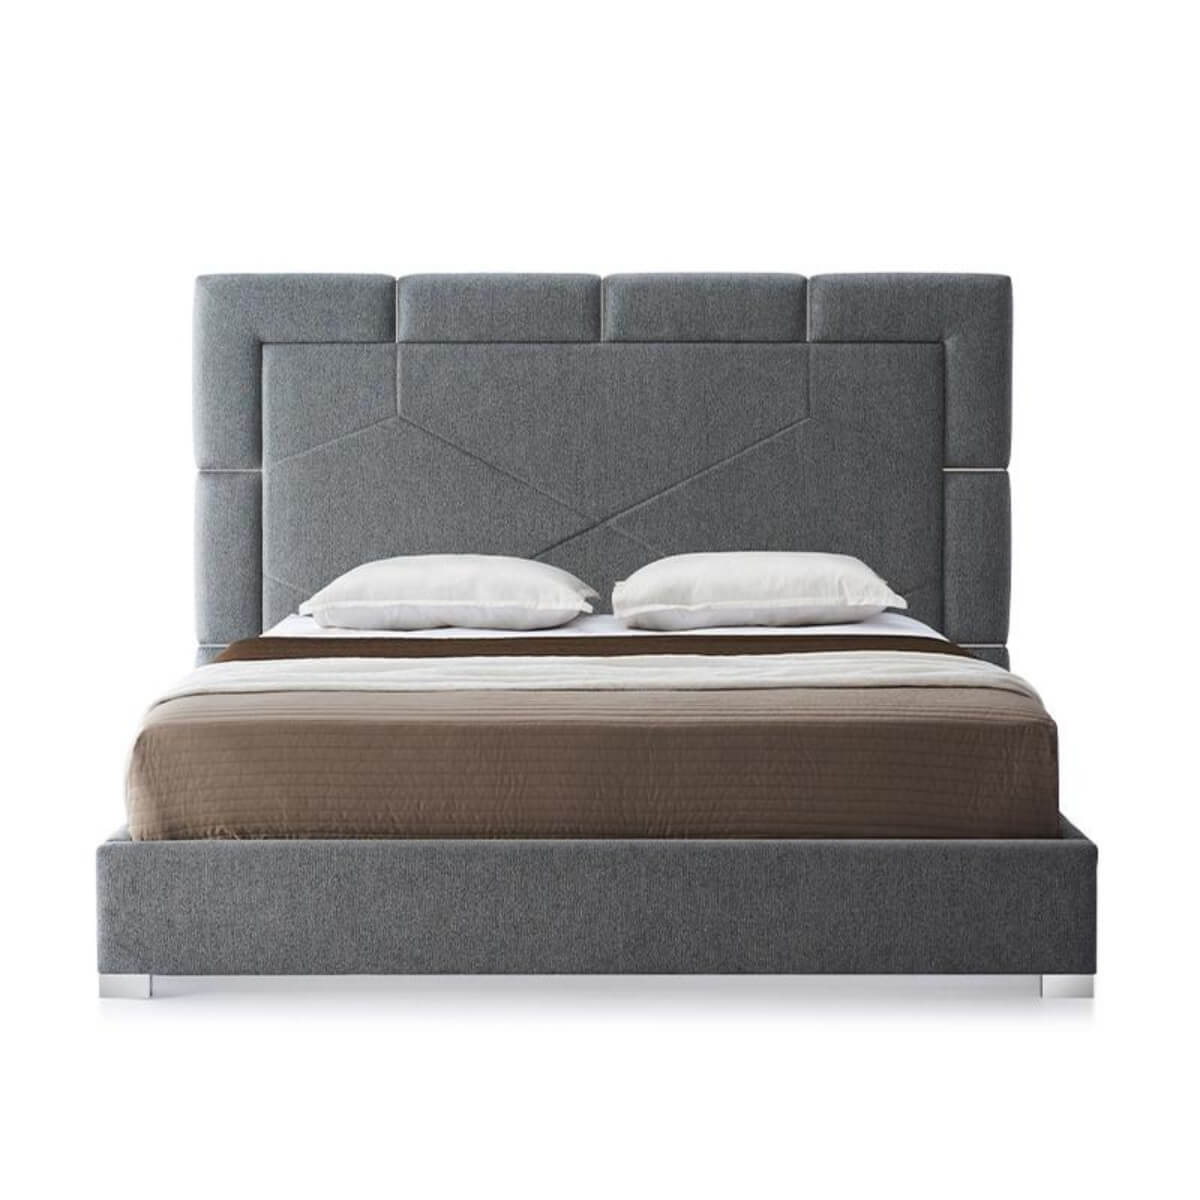 AstralArcadia Luxurious Velvet Bed